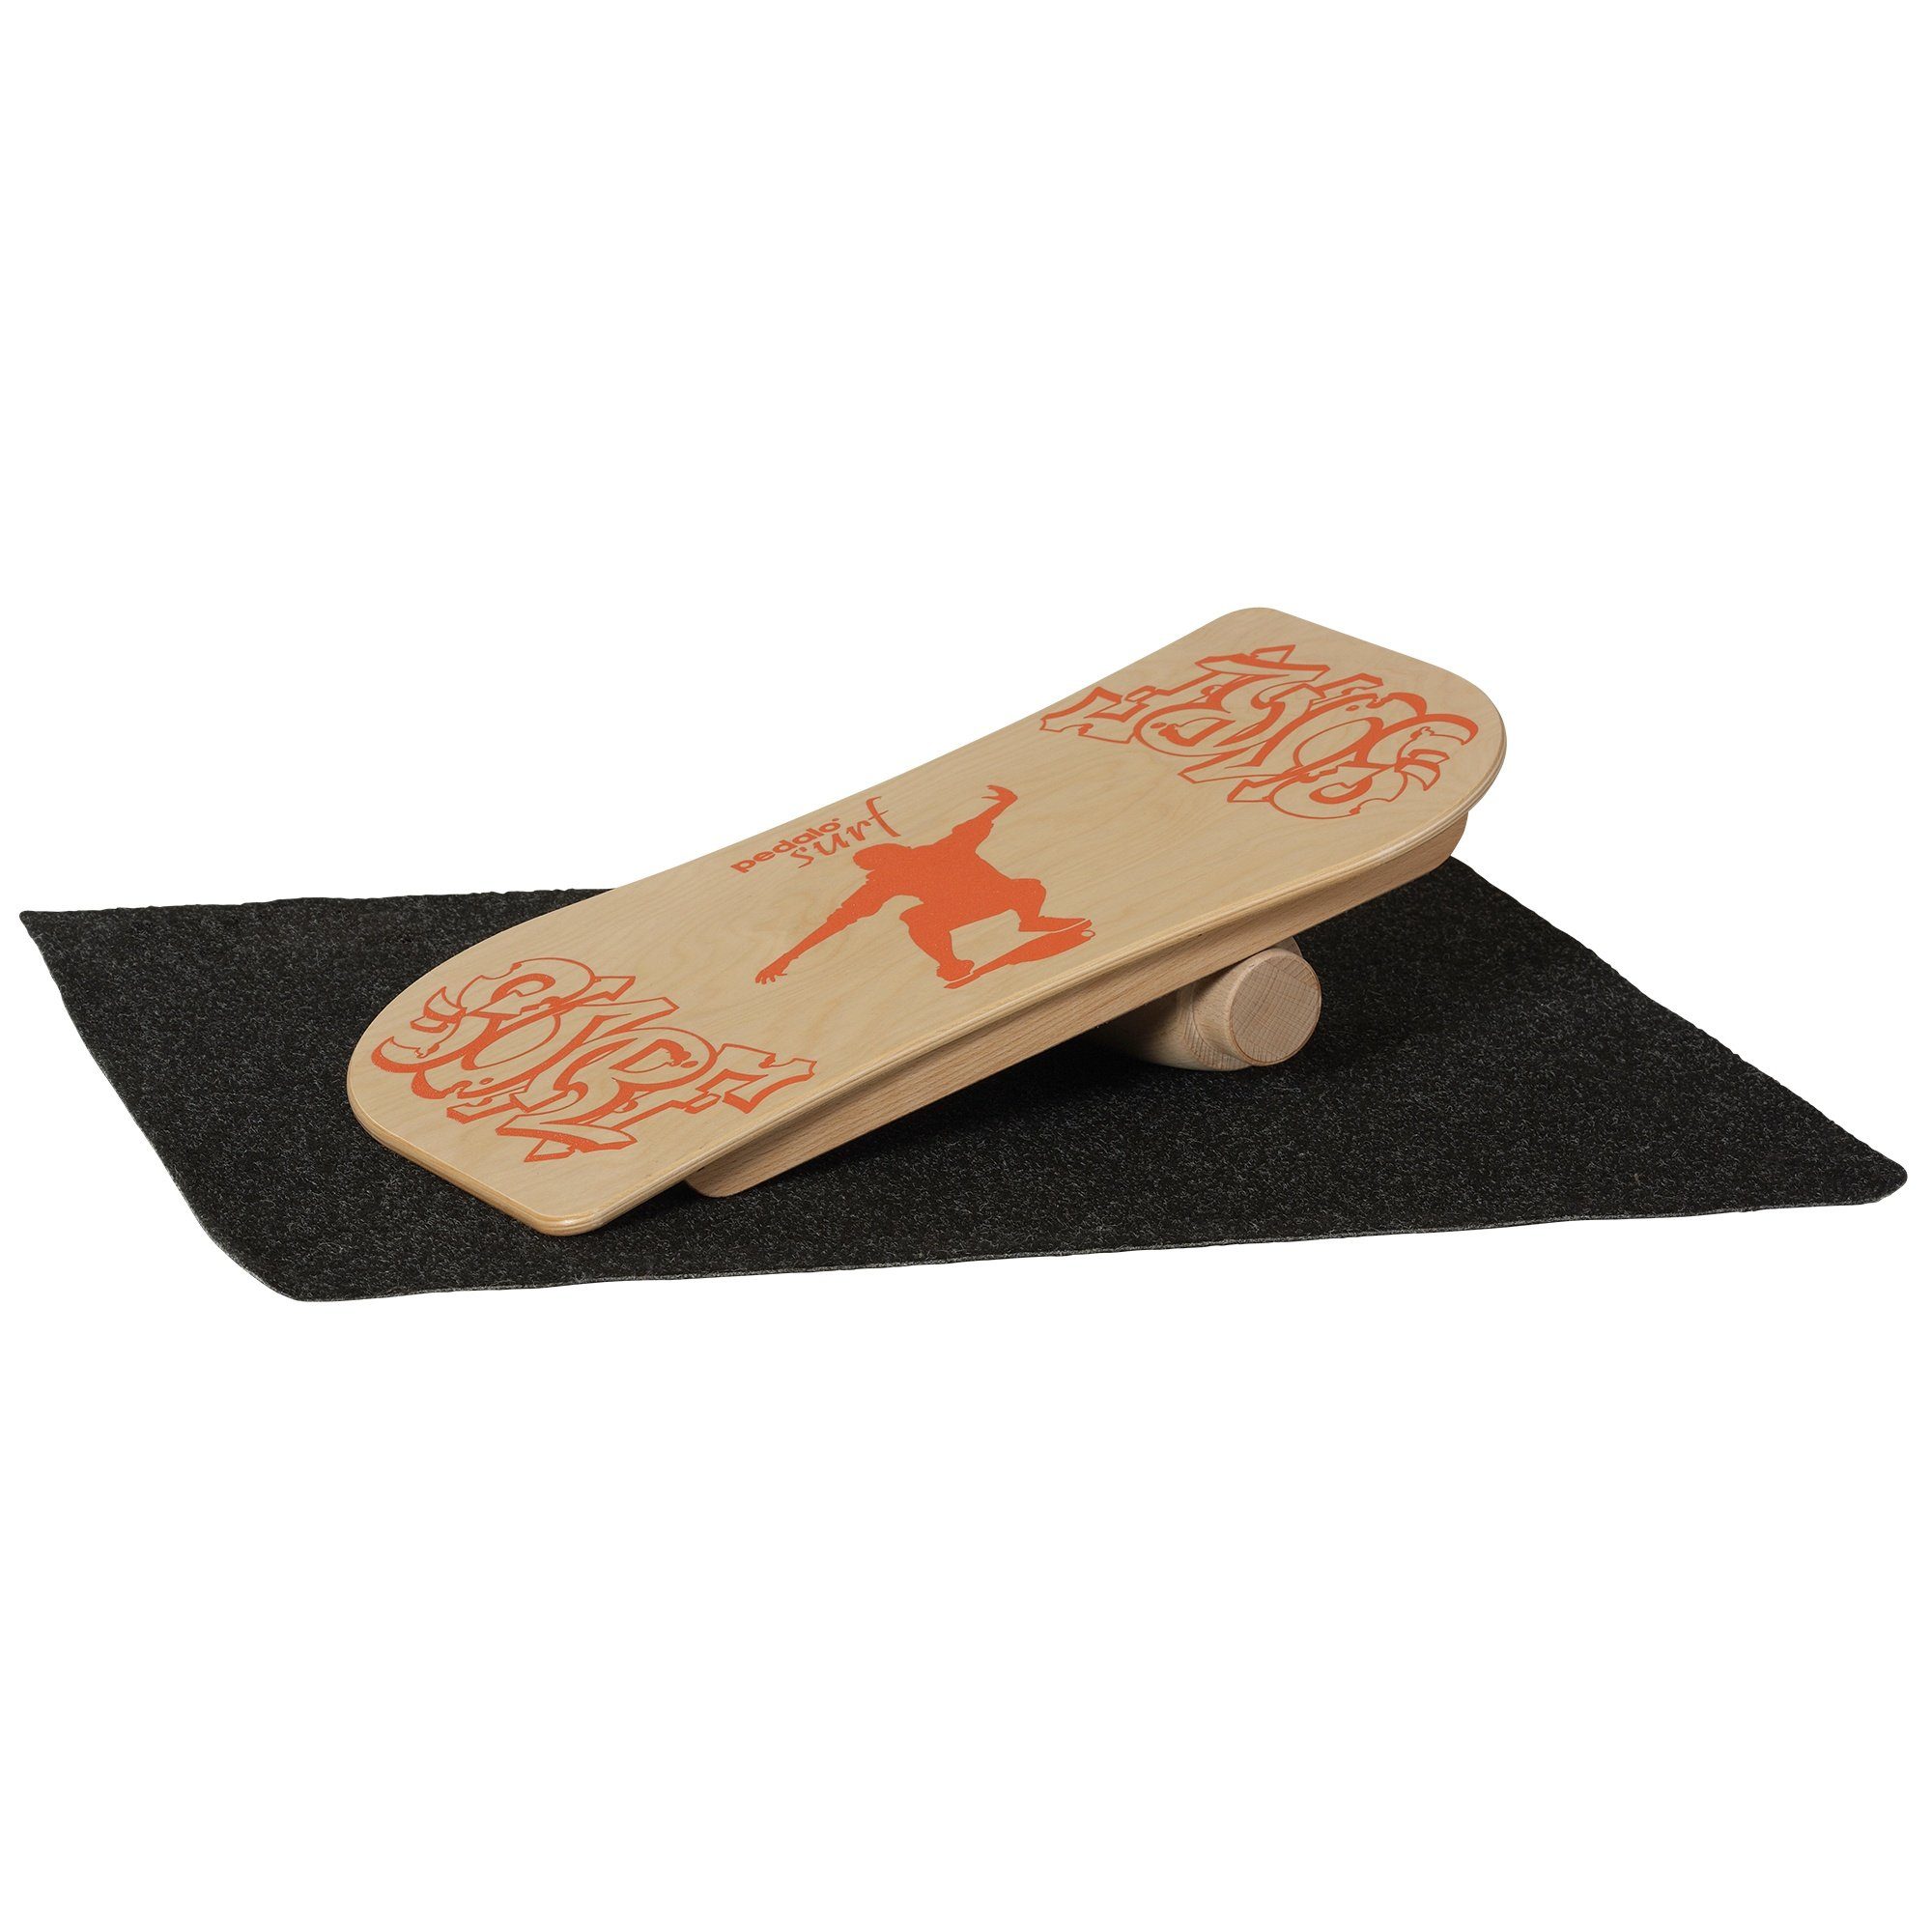 pedalo® Balanceboard PEDALO Surf - Balanceboard, Holz, Rotation, dreidimensional Führung, das Unterlage, Gummianschlag wirkende